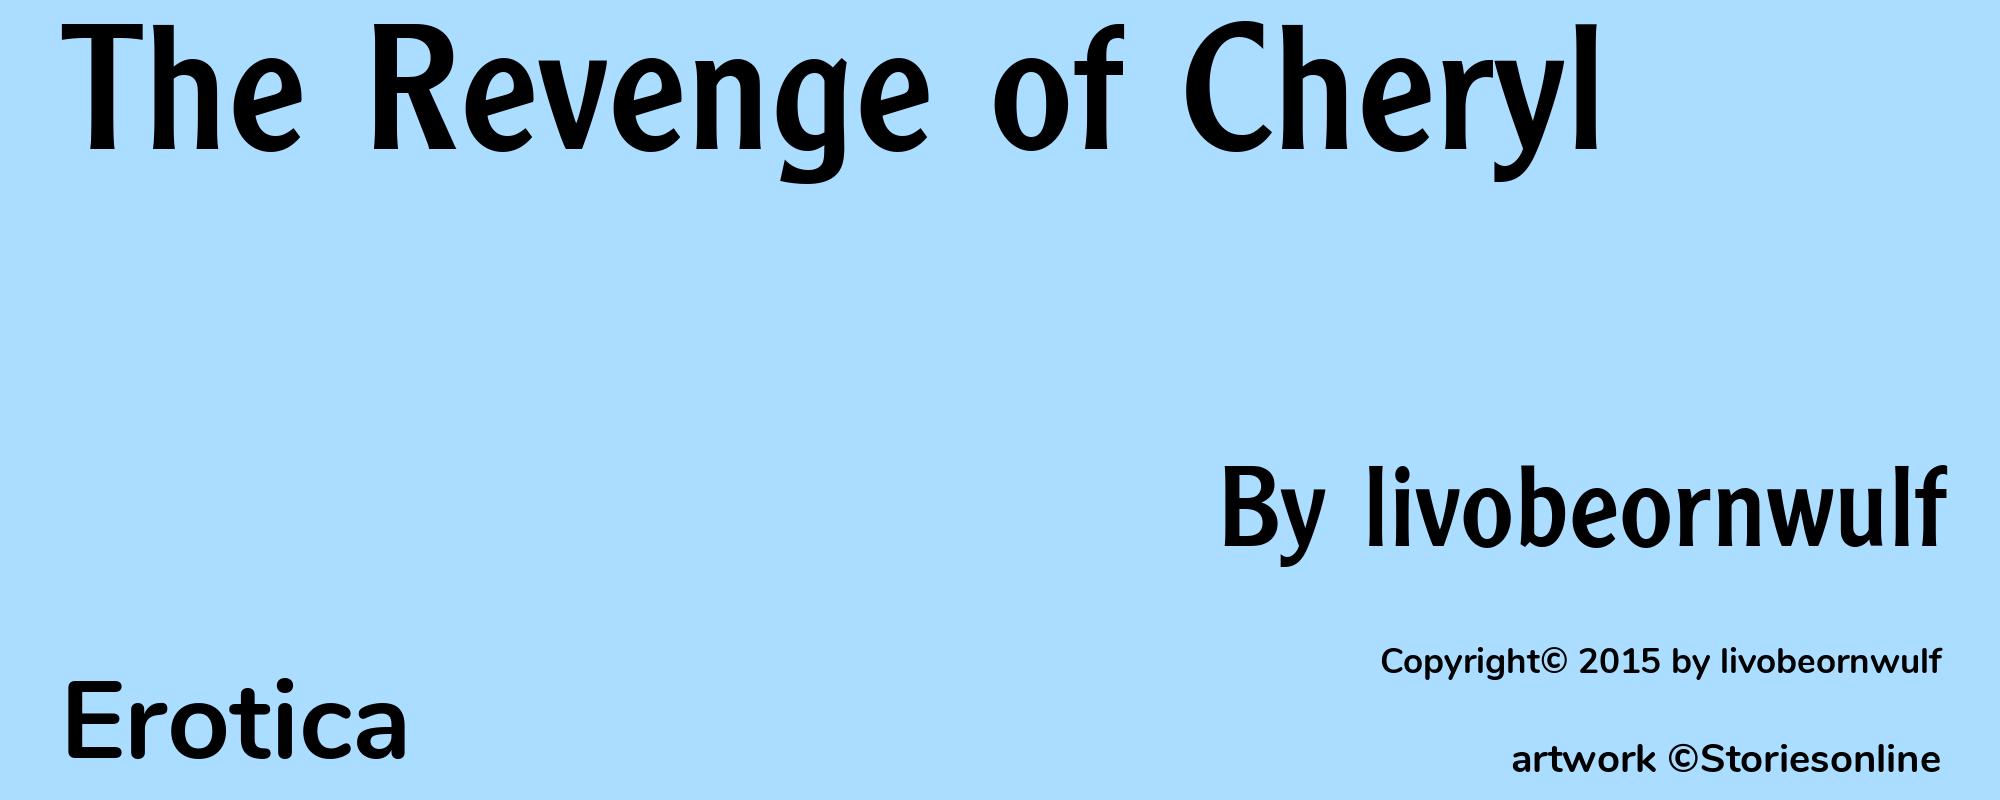 The Revenge of Cheryl - Cover